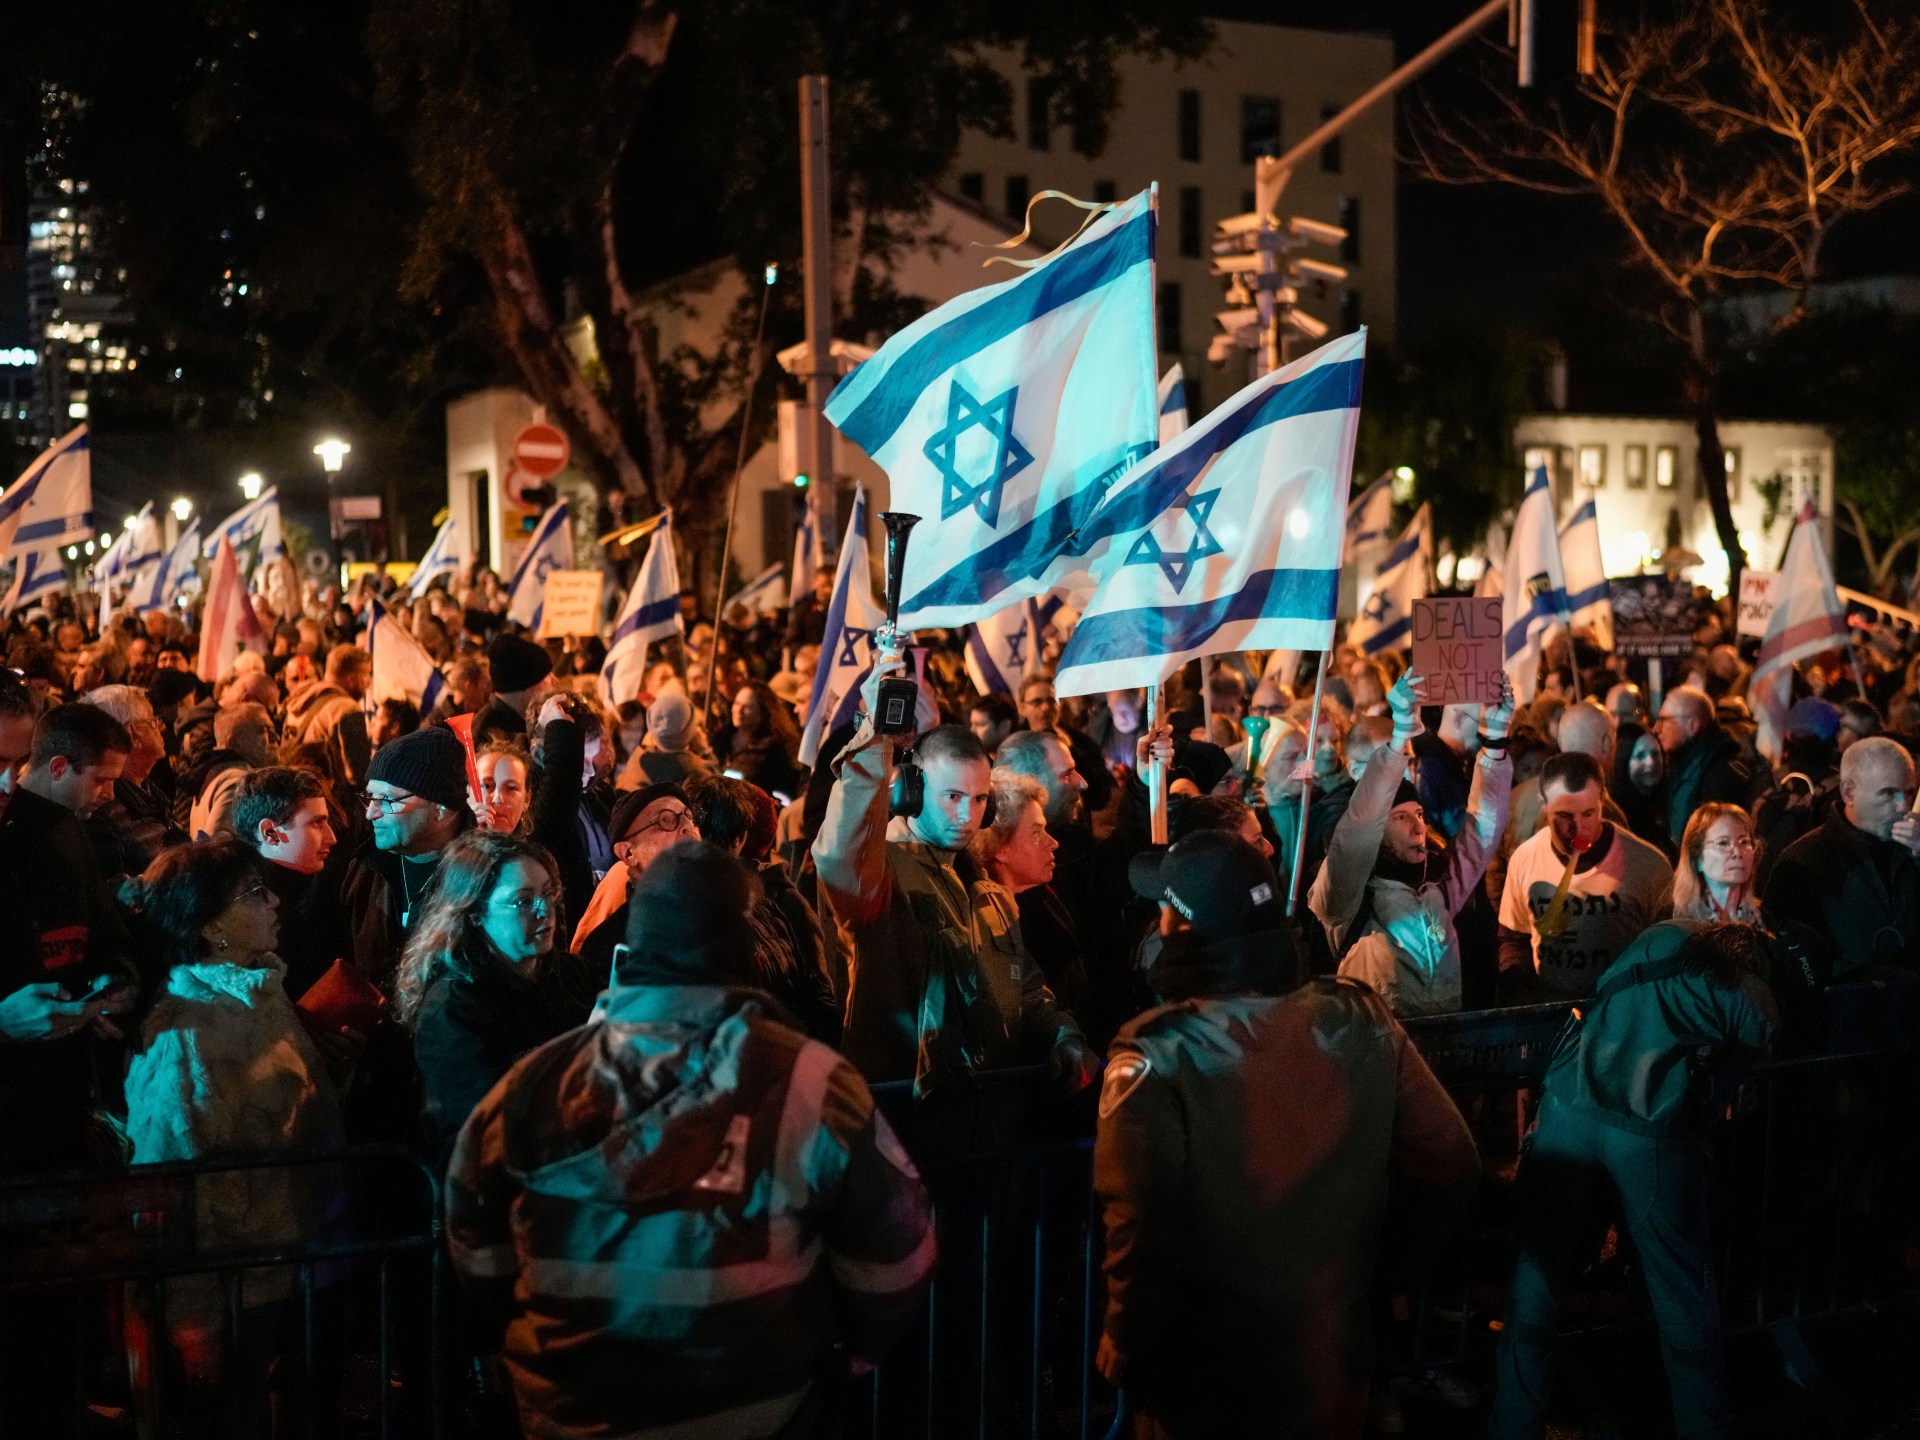 네타냐후, 수천 건의 시위 속에서 조기 선거 요구 거부  이스라엘의 가자지구 전쟁 소식